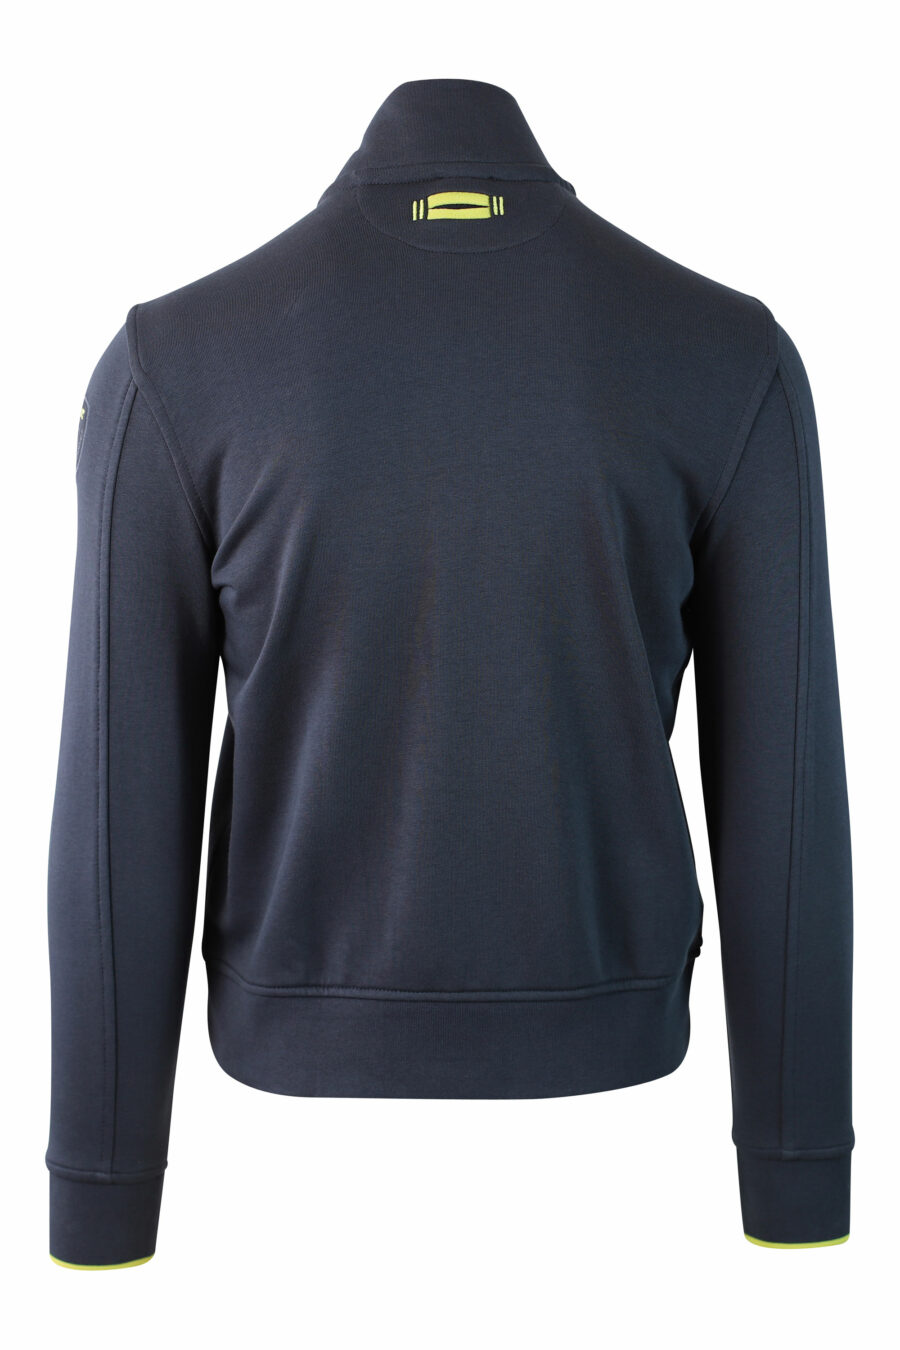 Blaues Sweatshirt mit Reißverschluss und Aufnäher - IMG 9997